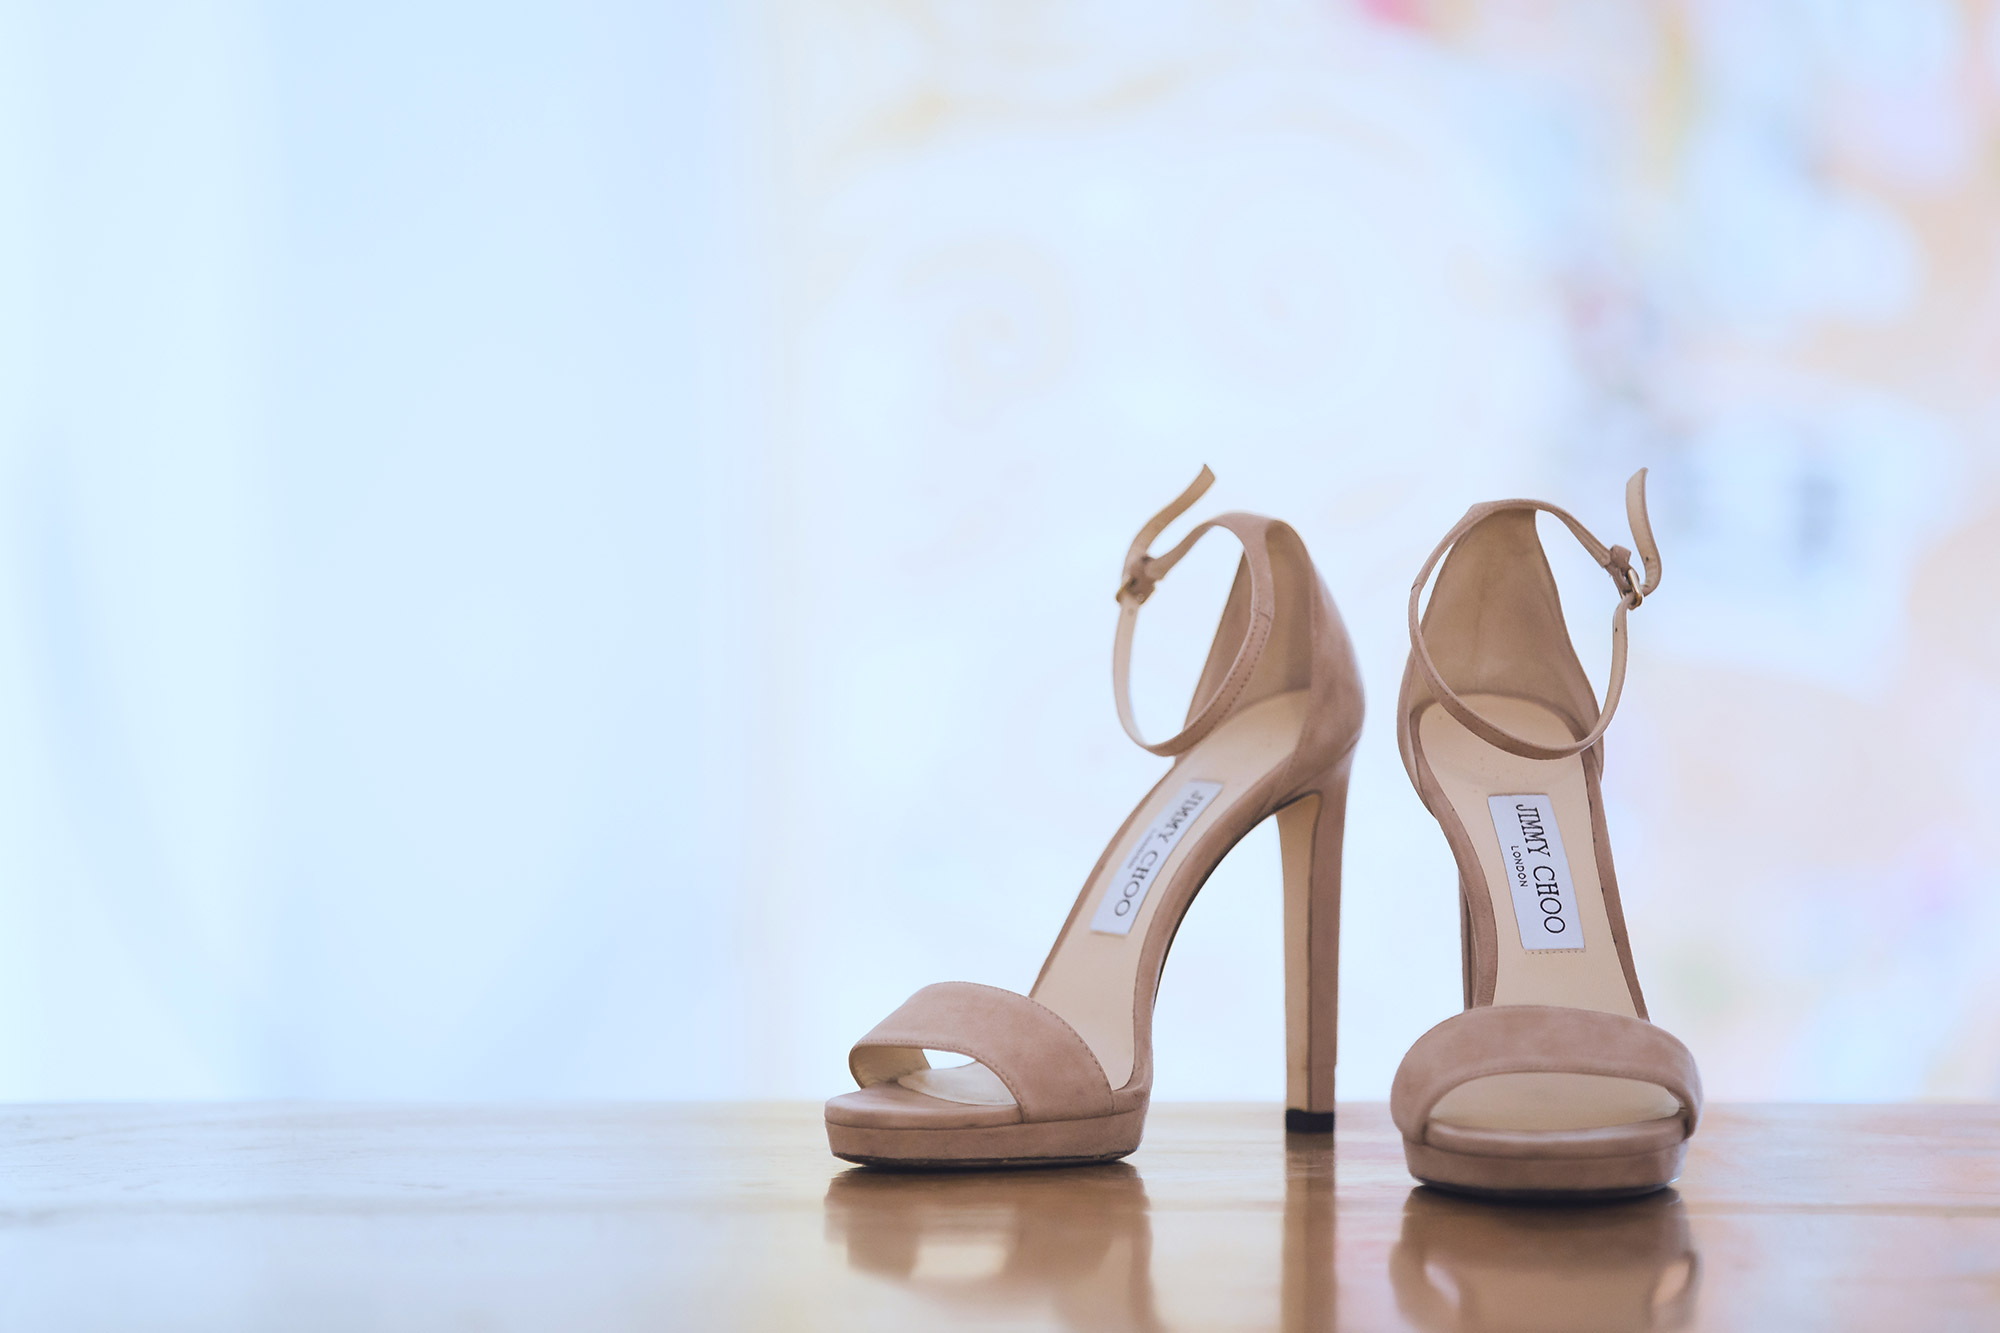 scarpe sposa jimmy choo bridal shoes castello odescalchi bracciano by Photo27